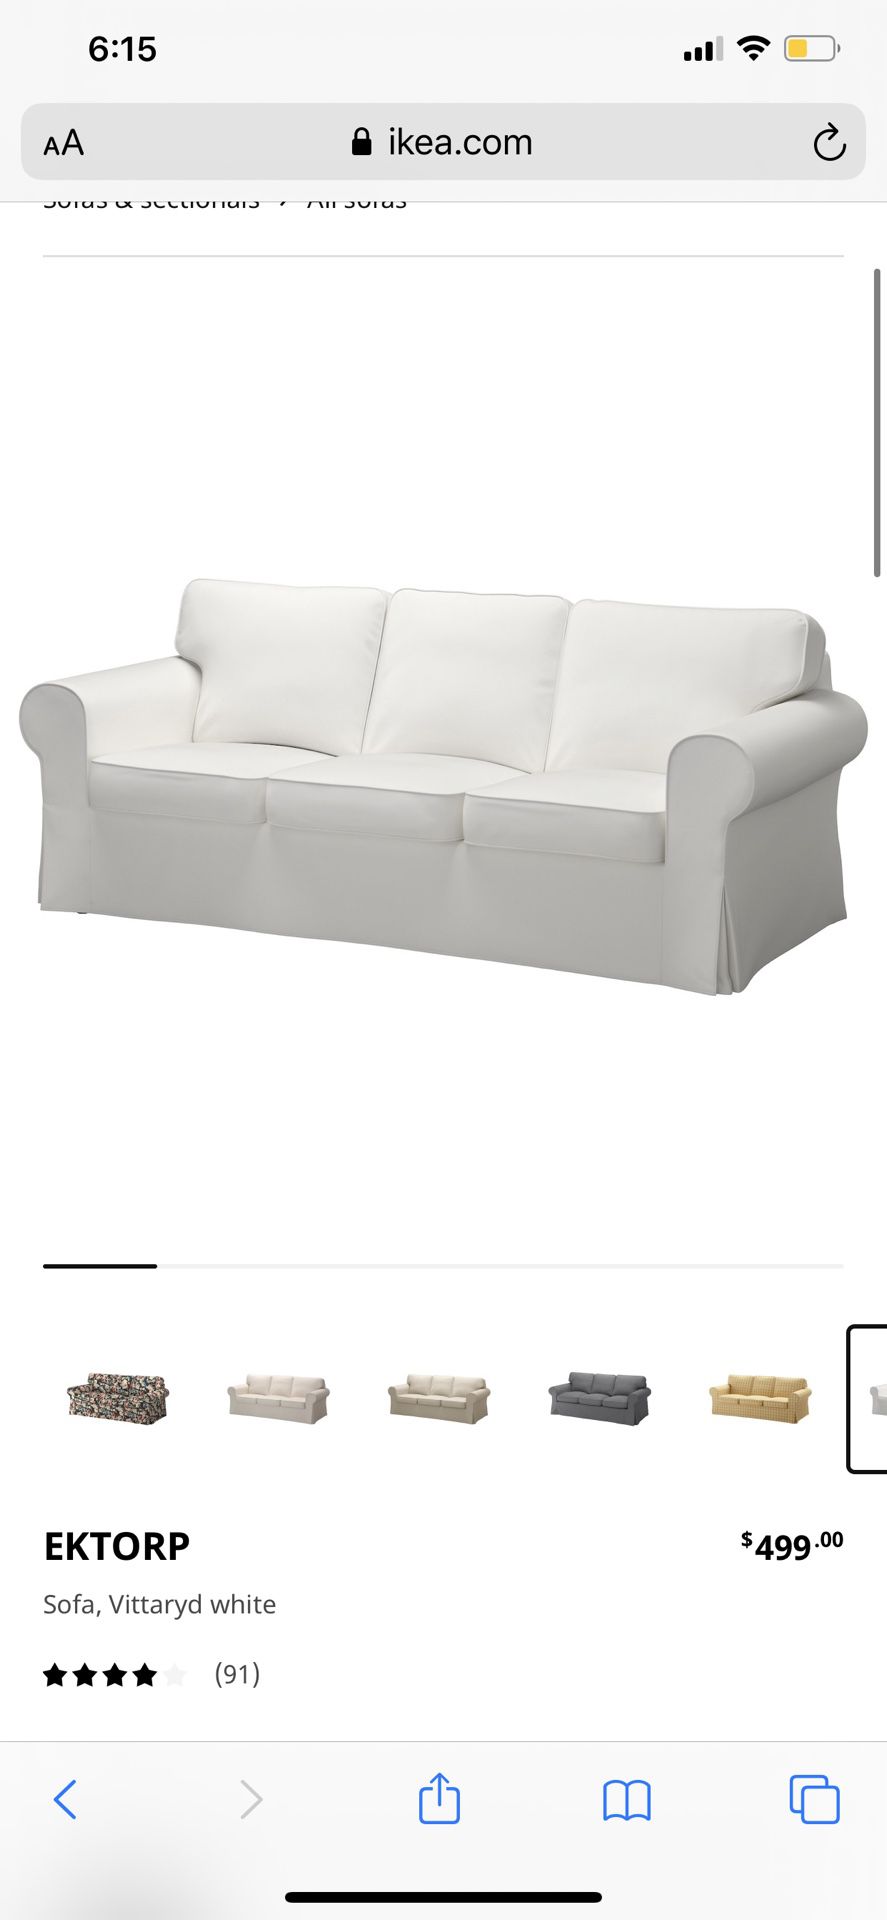 2 Ektorp couches white!